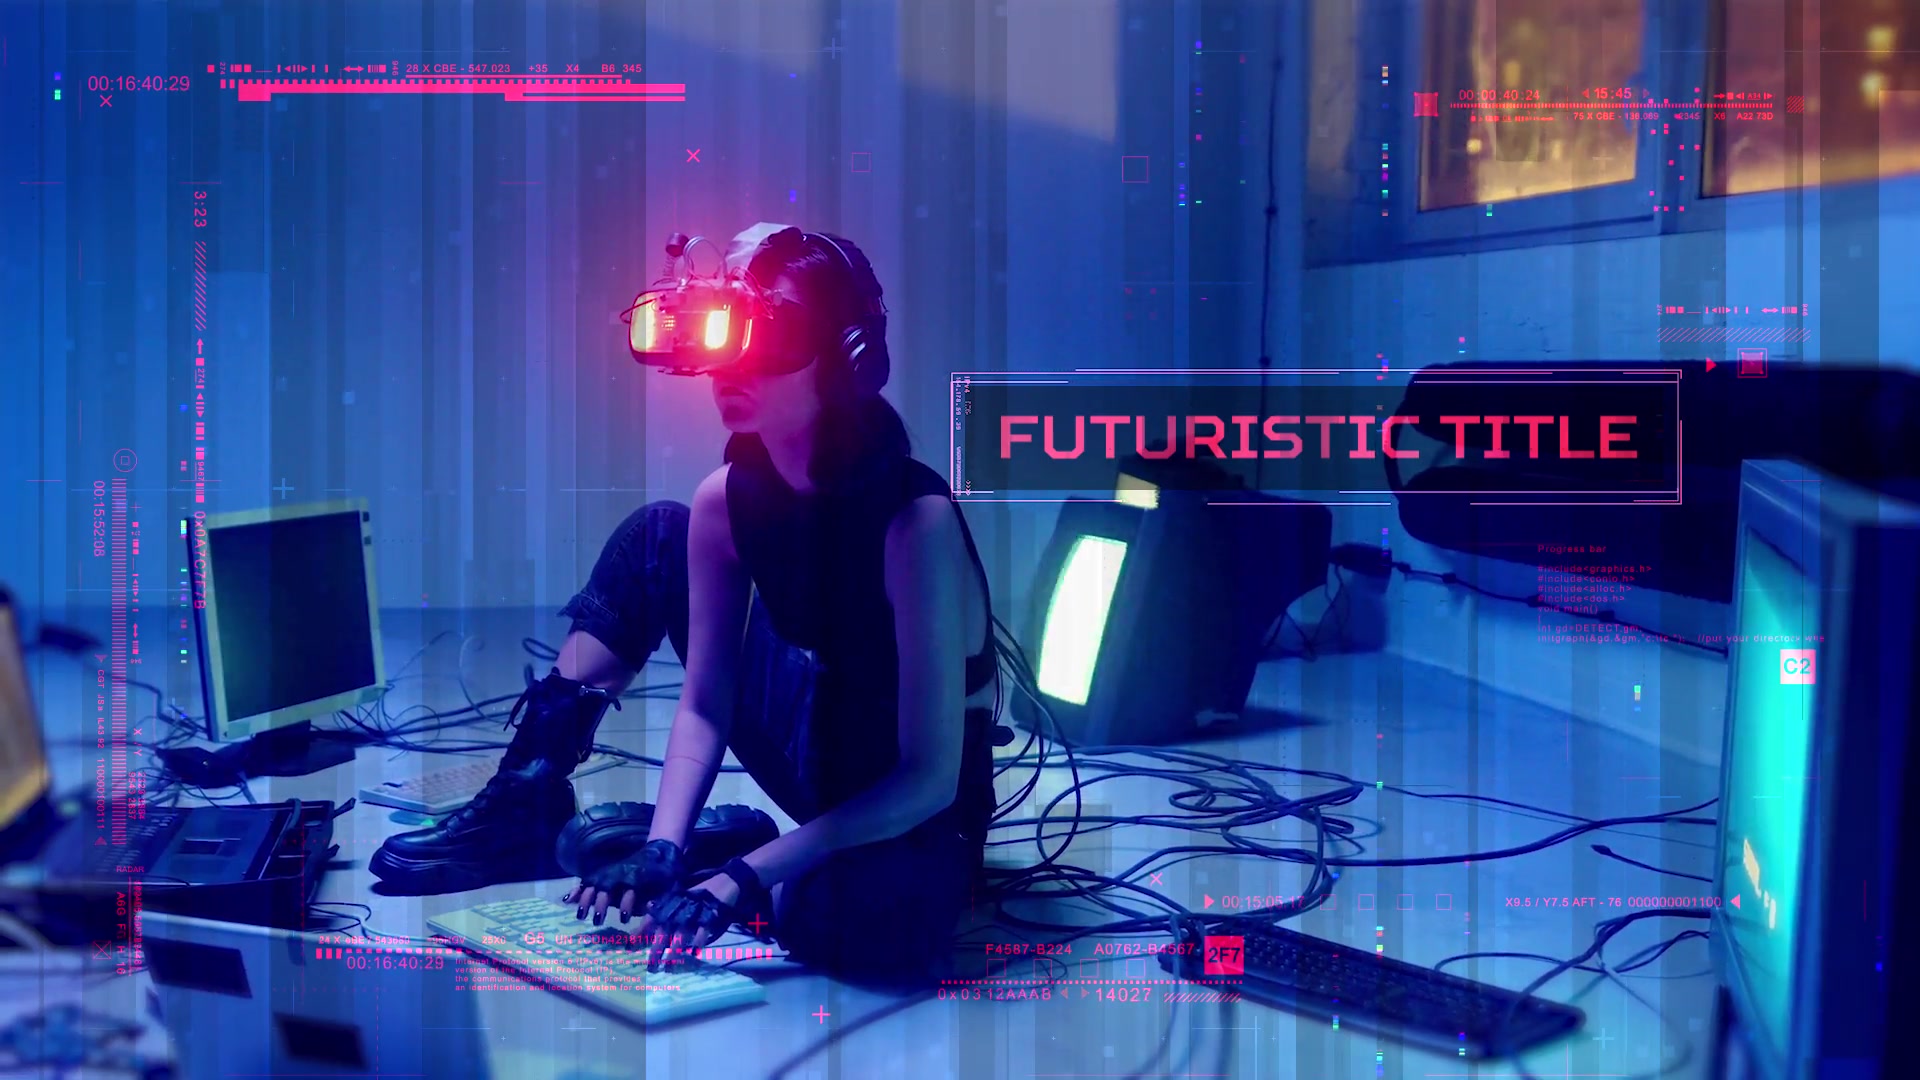 Cyber Futuristic Trailer Videohive 38919212 Premiere Pro Image 6